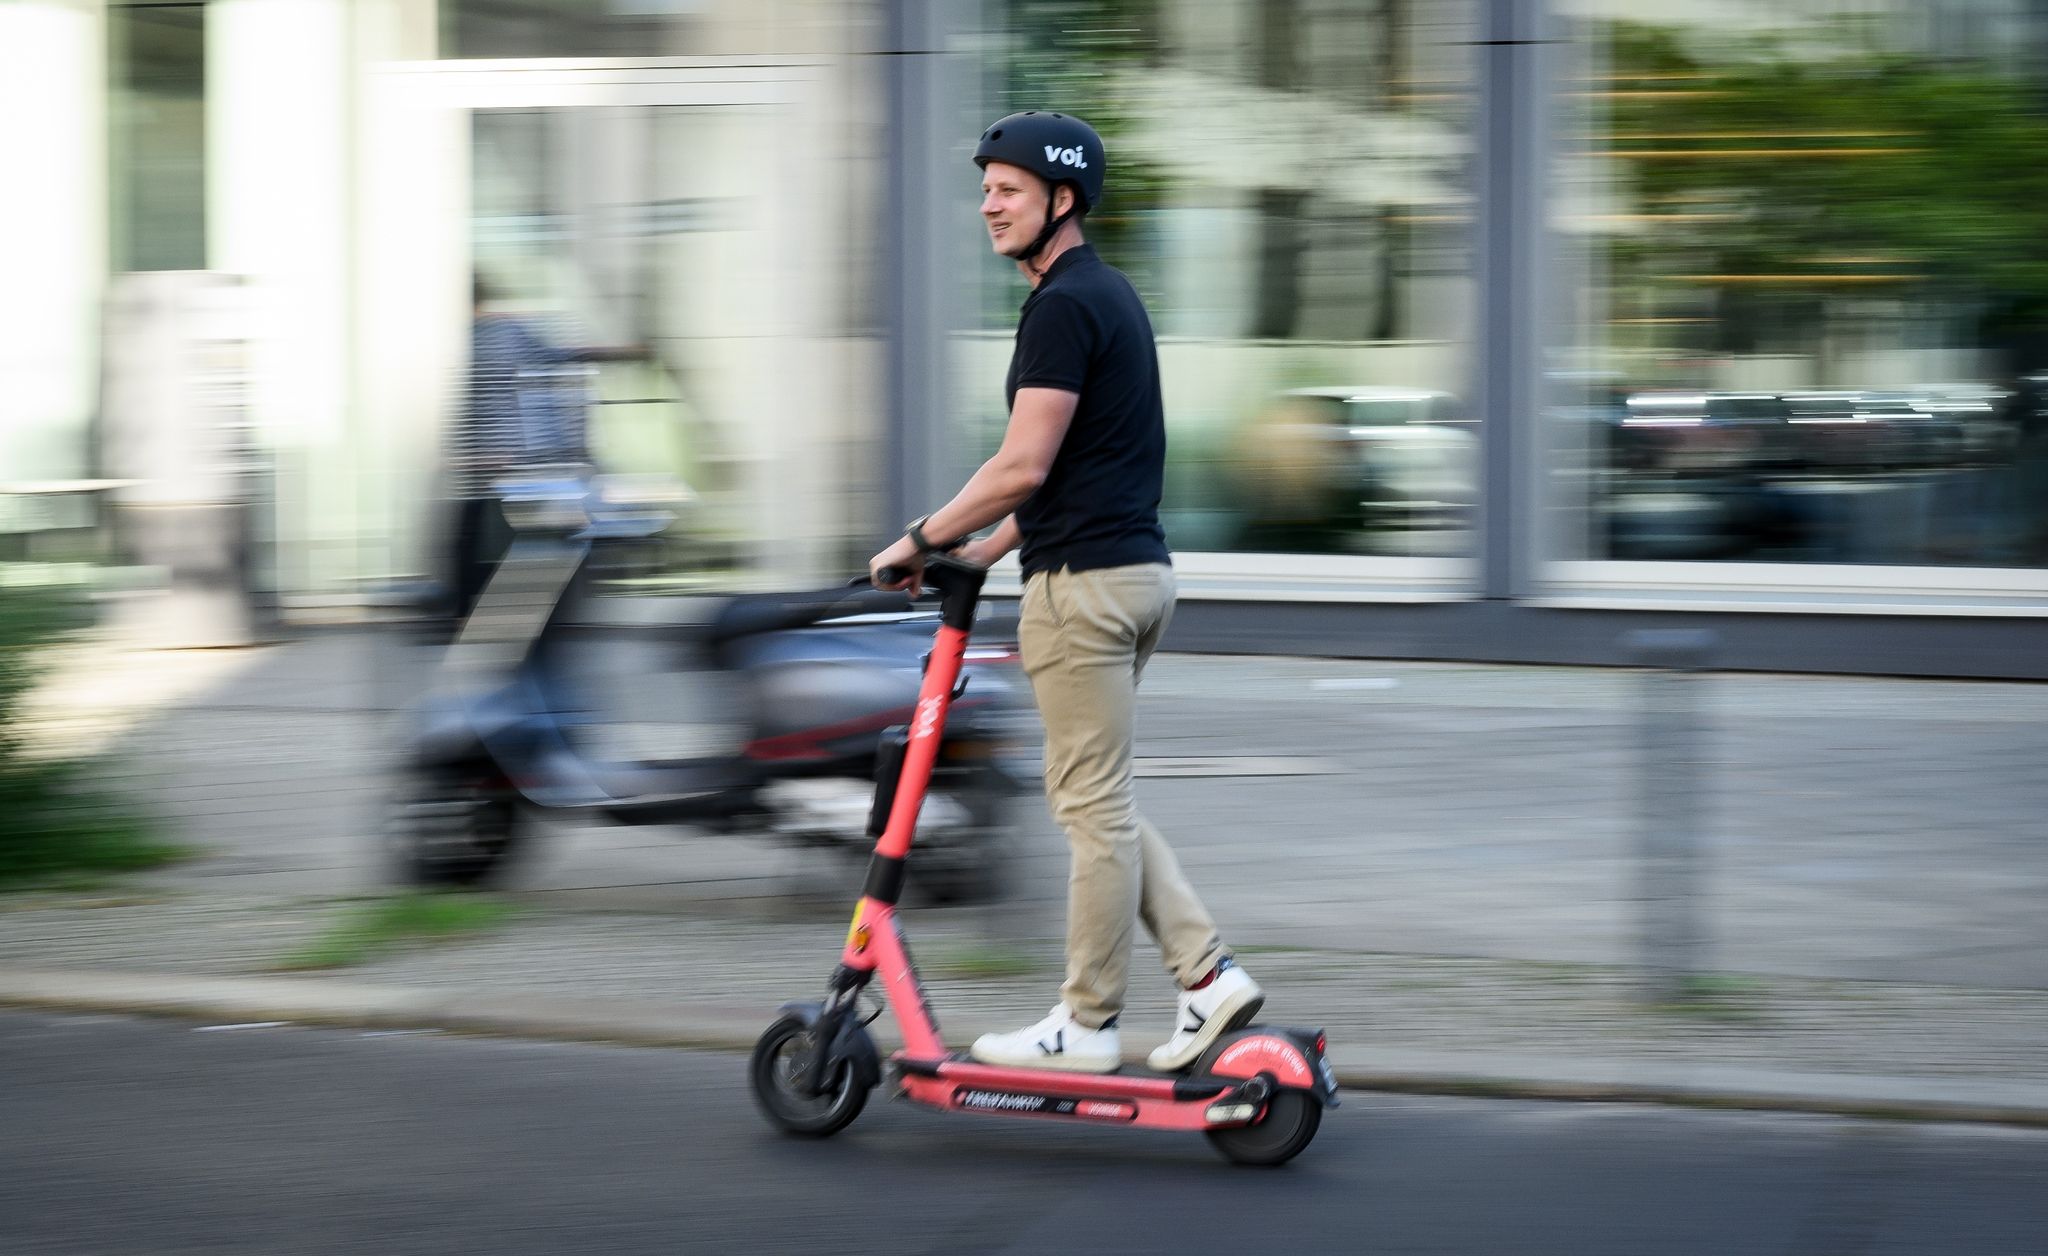 In Berlin erlaubt, in Paris hat die Stadtverwaltung E-Scooter grundsätzlich verboten.